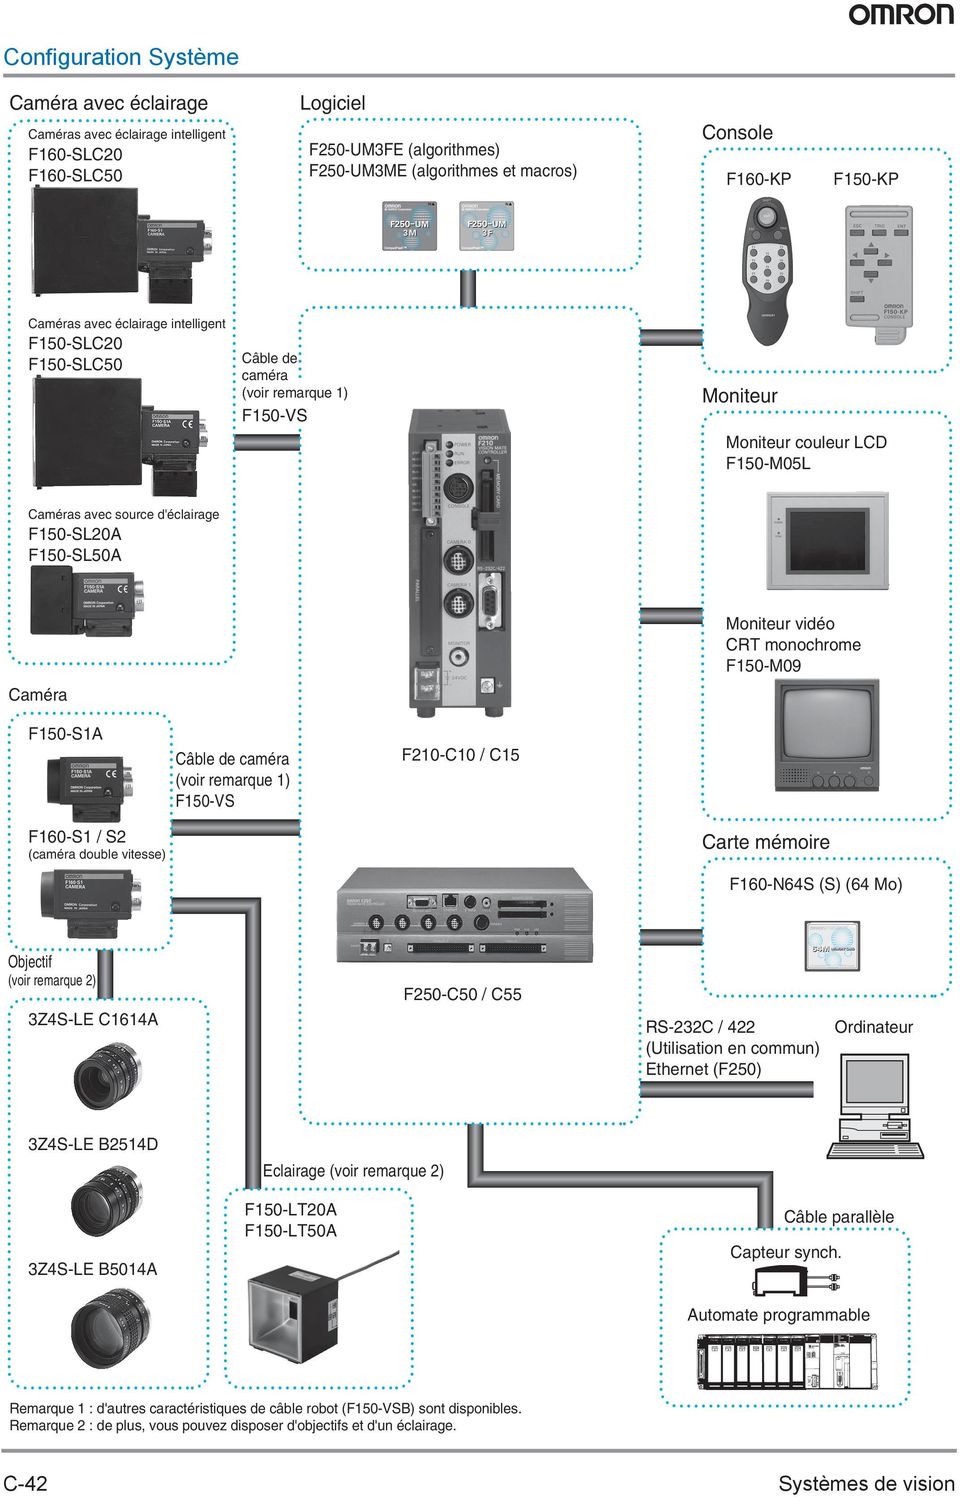 Moniteur vidéo CRT monochrome F150-M09 F150-S1A Câble de caméra (voir remarque 1) F150-VS -C10 / C15 F160-S1 / S2 (caméra double vitesse) Carte mémoire F160-N64S (S) (64 Mo) F160-N64S Objectif (voir